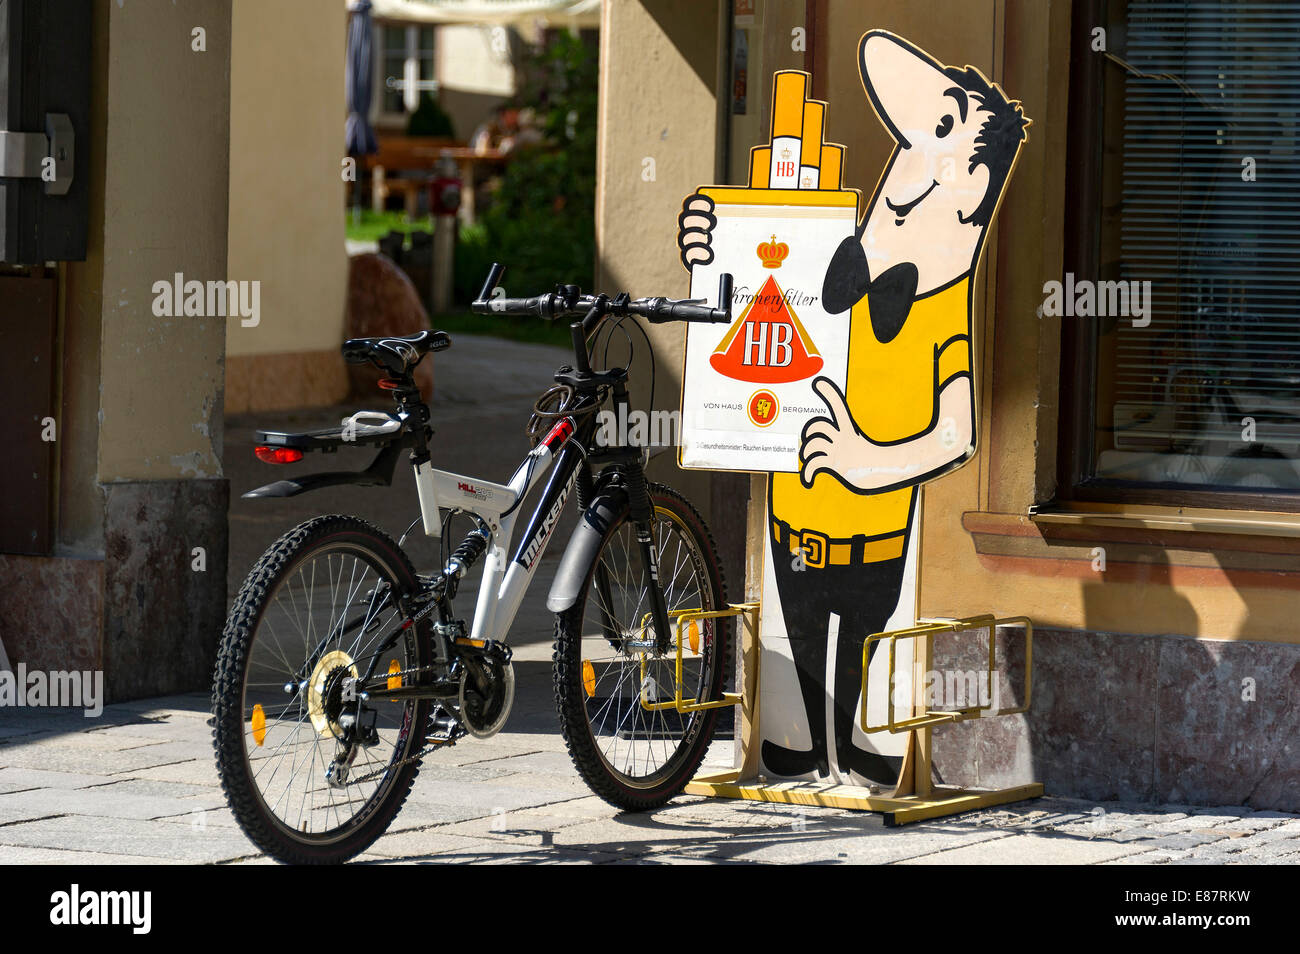 Vélo avec le HB-Männchen caractère publicitaire, HB marque de cigarettes, Mittenwald, Upper Bavaria, Bavaria, Germany Banque D'Images